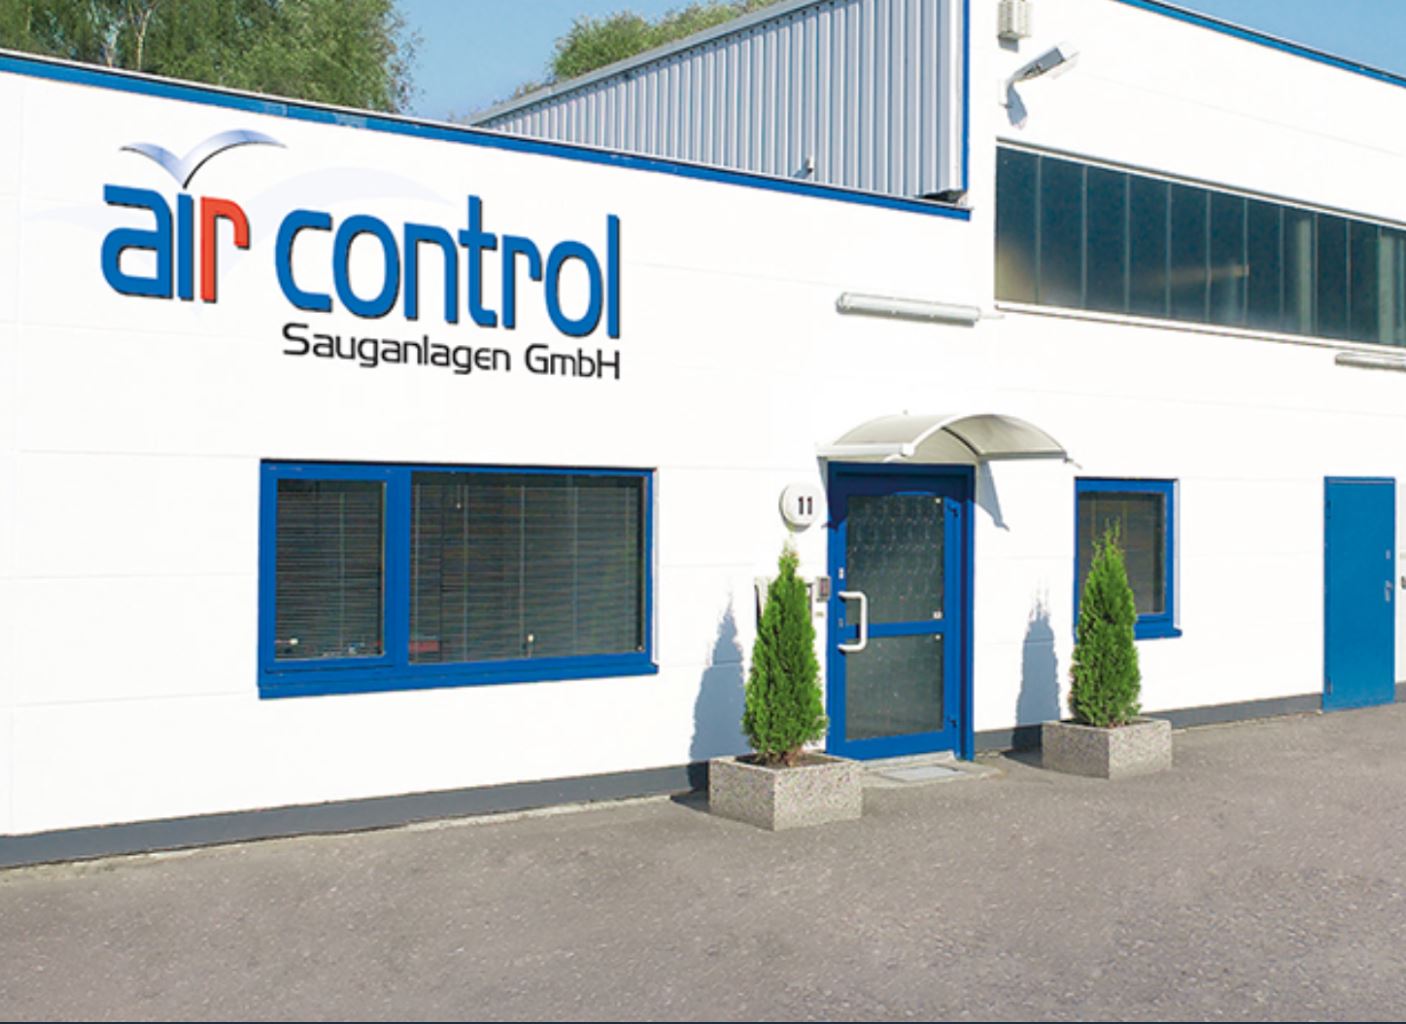 Bilder air control Sauganlagen GmbH